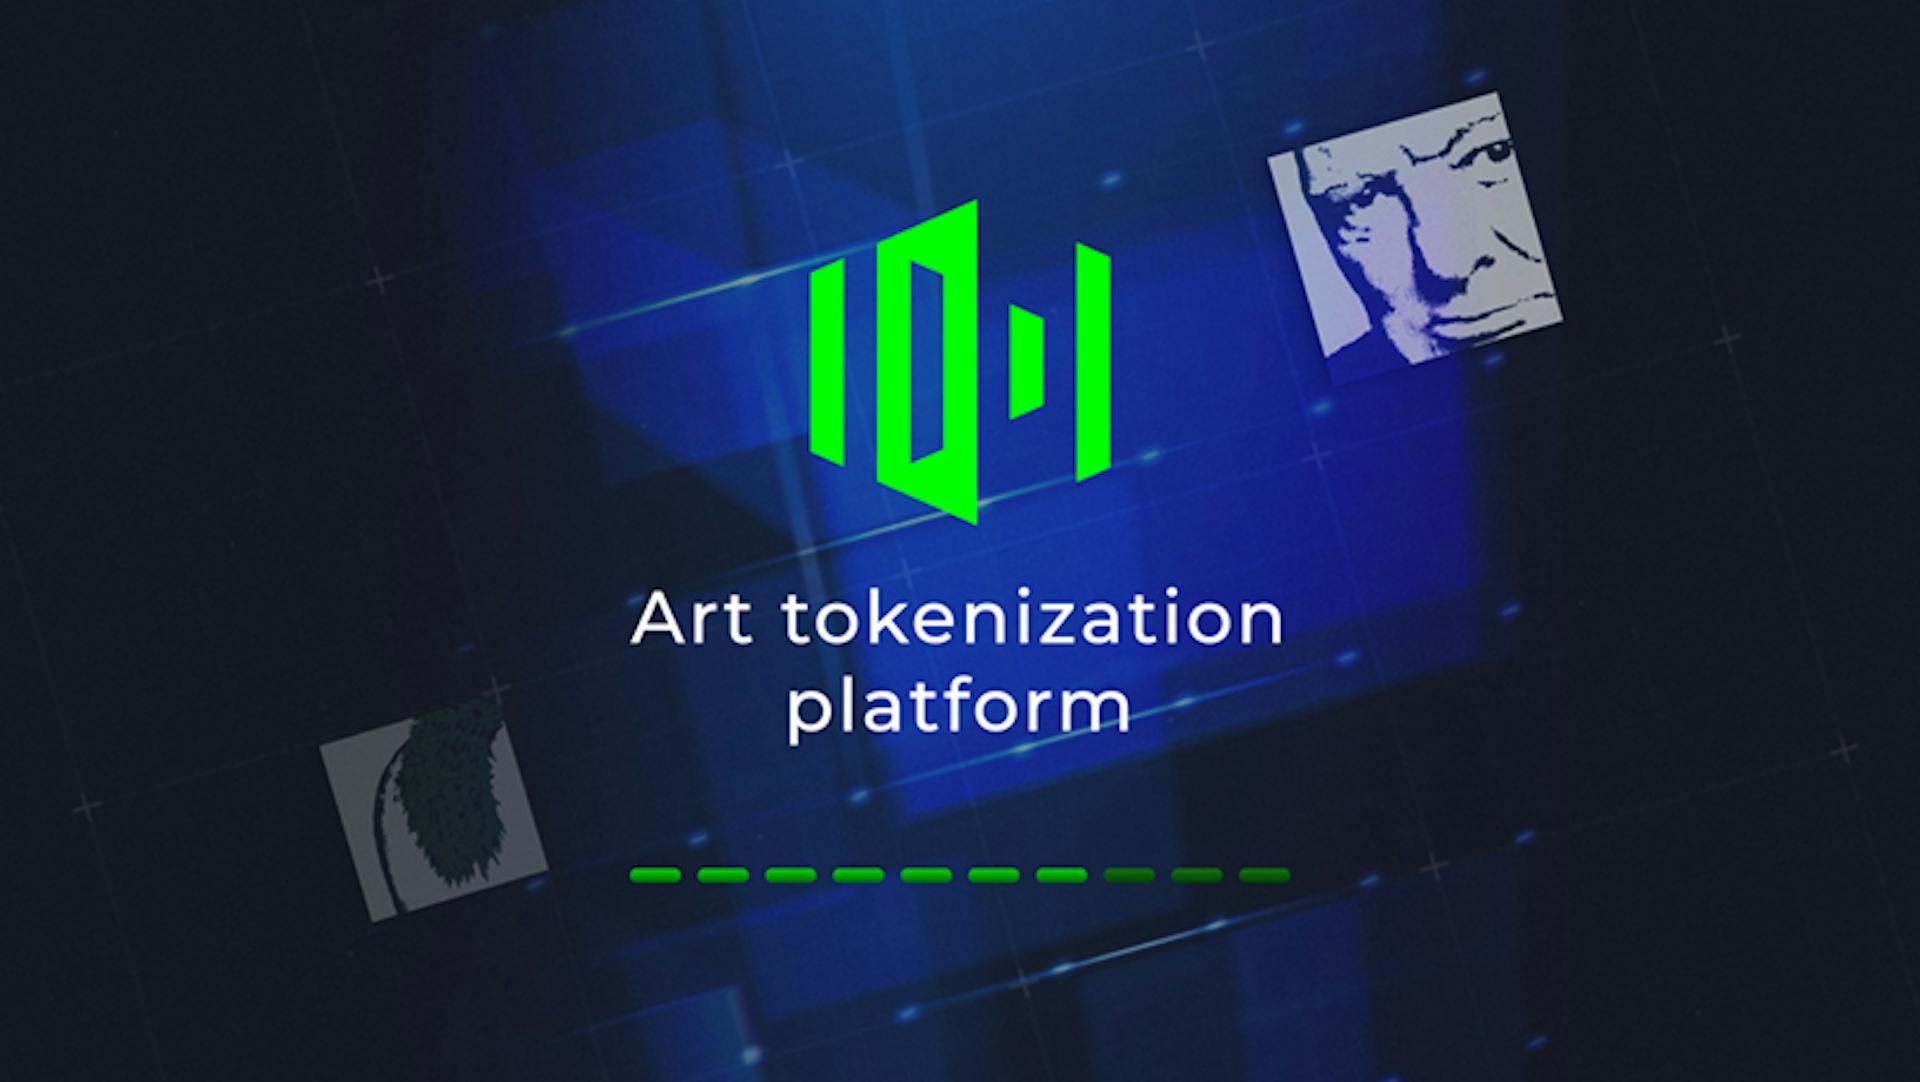 featured image - El arte de la inclusión: 10101.art está revolucionando la propiedad mundial del arte con tecnología Blockchain